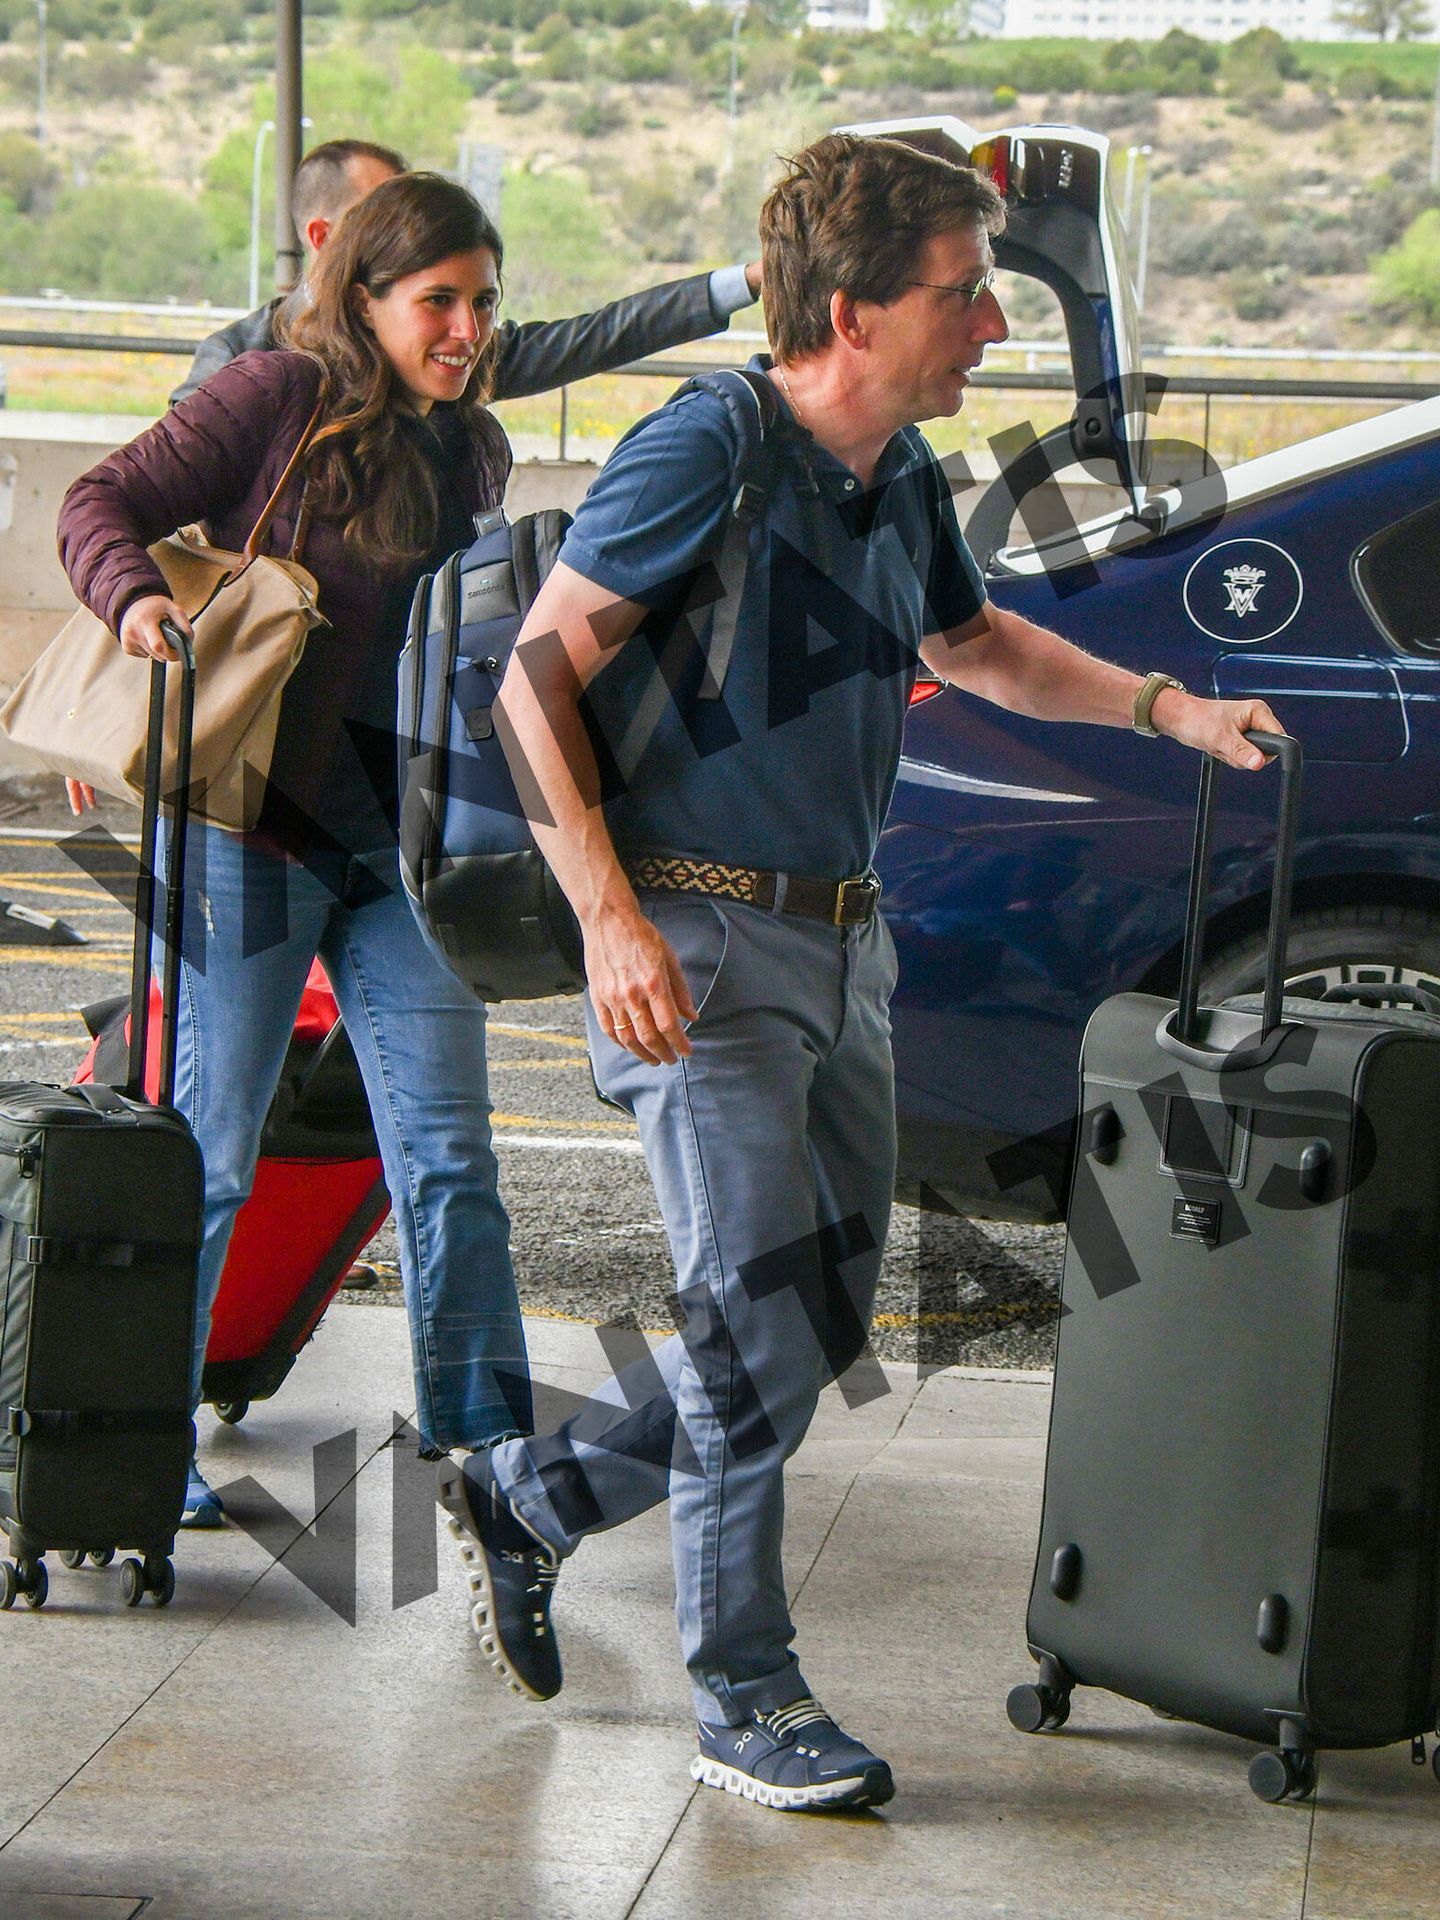 Teresa Urquijo y Almeida, saliendo del coche del Hotel Villamagna que les llevó al aeropuerto. (Studio24)